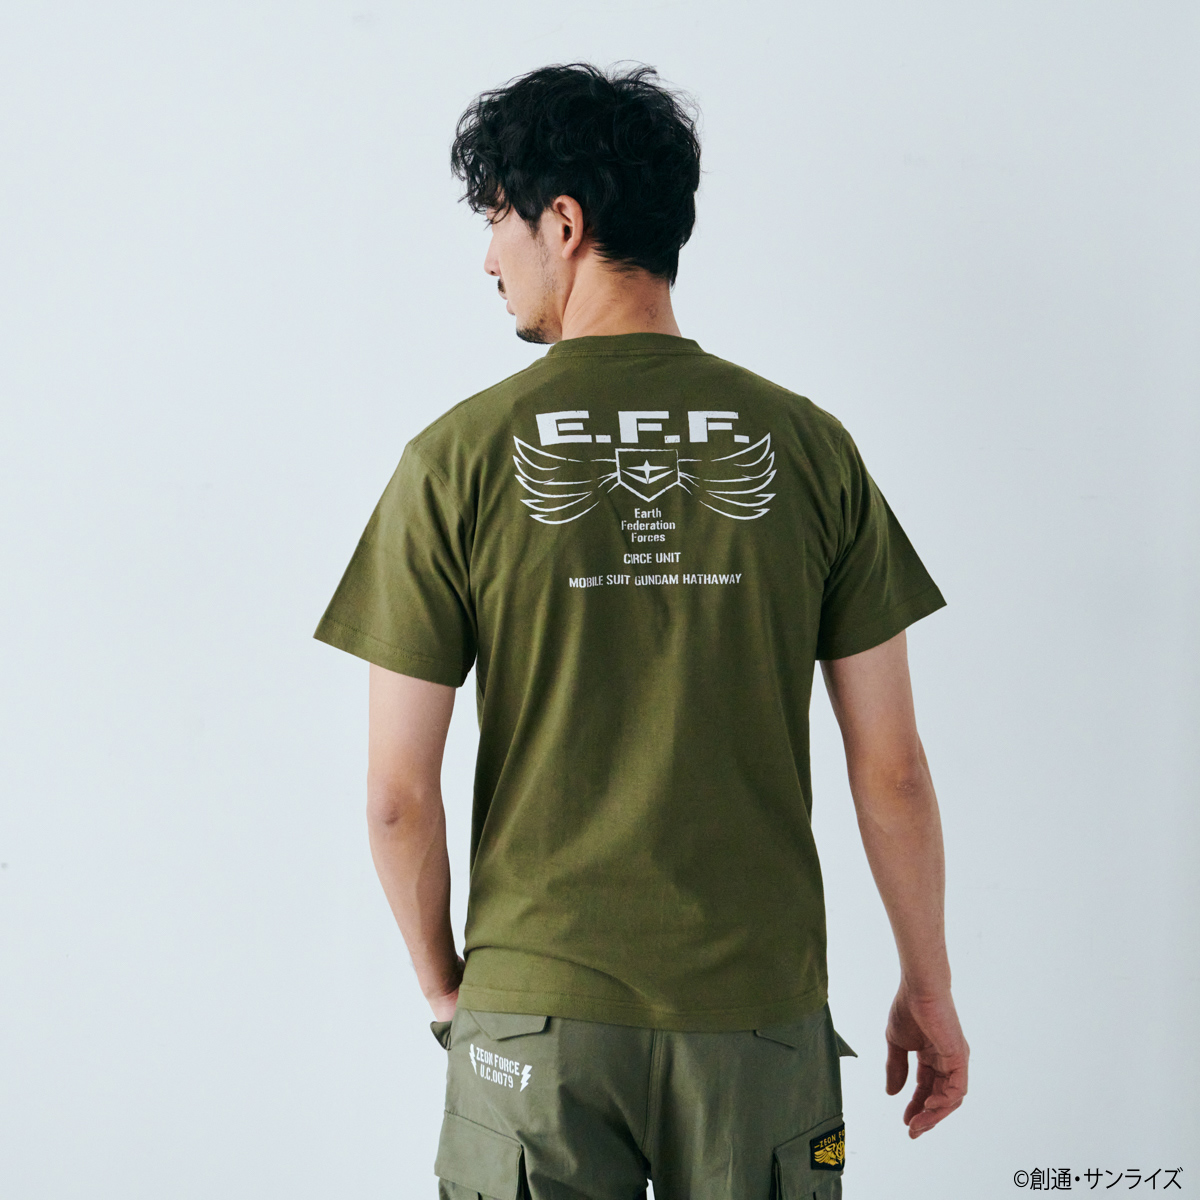 STRICT-G.ARMS『機動戦士ガンダム 閃光のハサウェイ』半袖Tシャツ E.F.F.